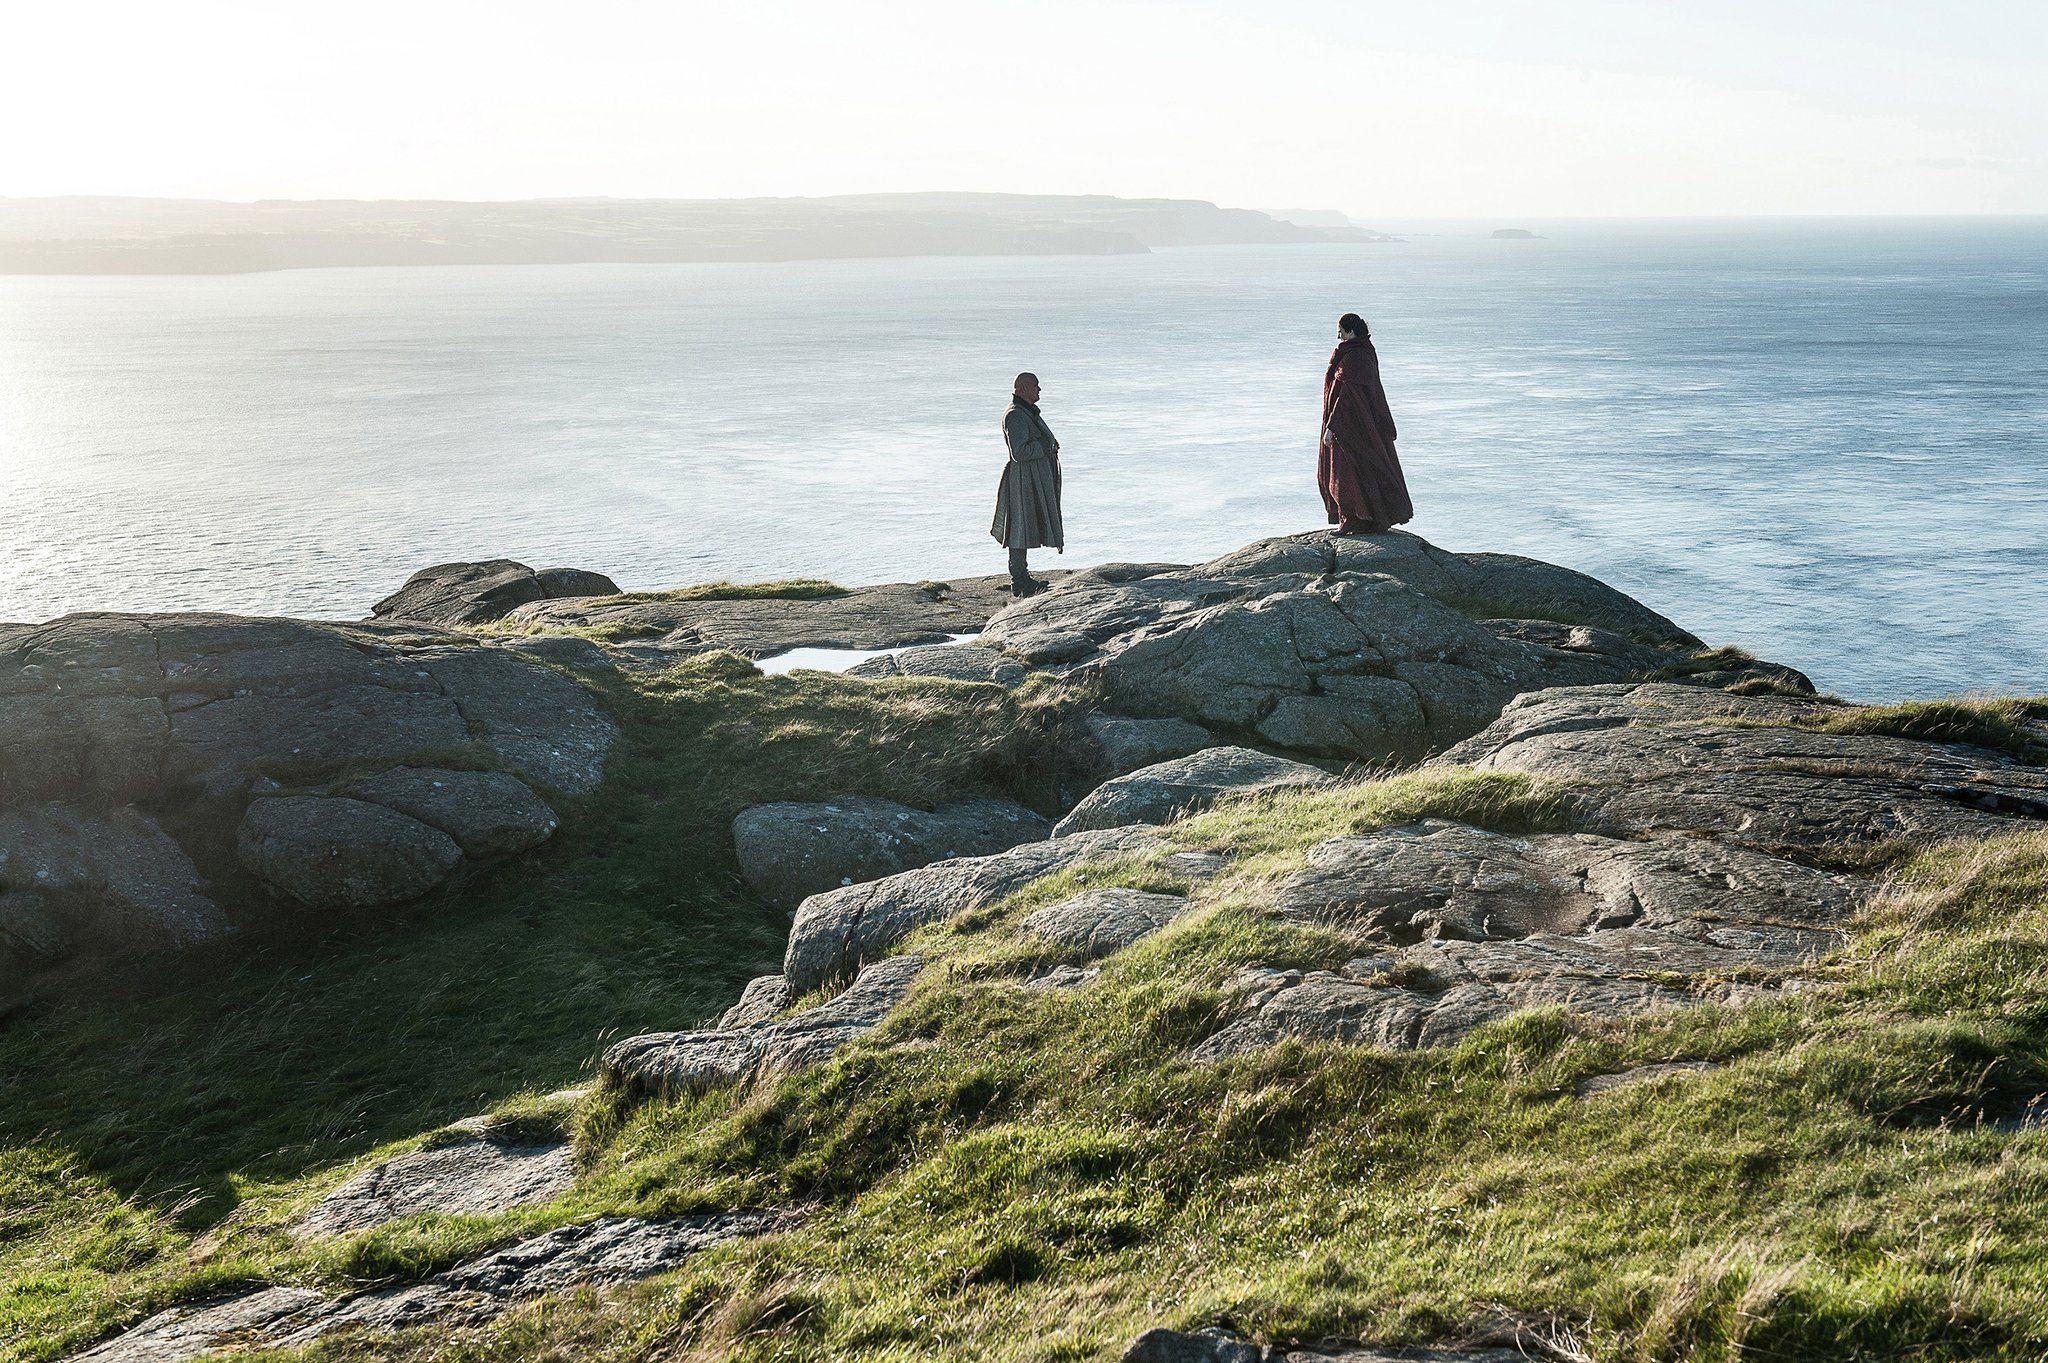 Varys and Melisandre speak on a cliff beside the ocean